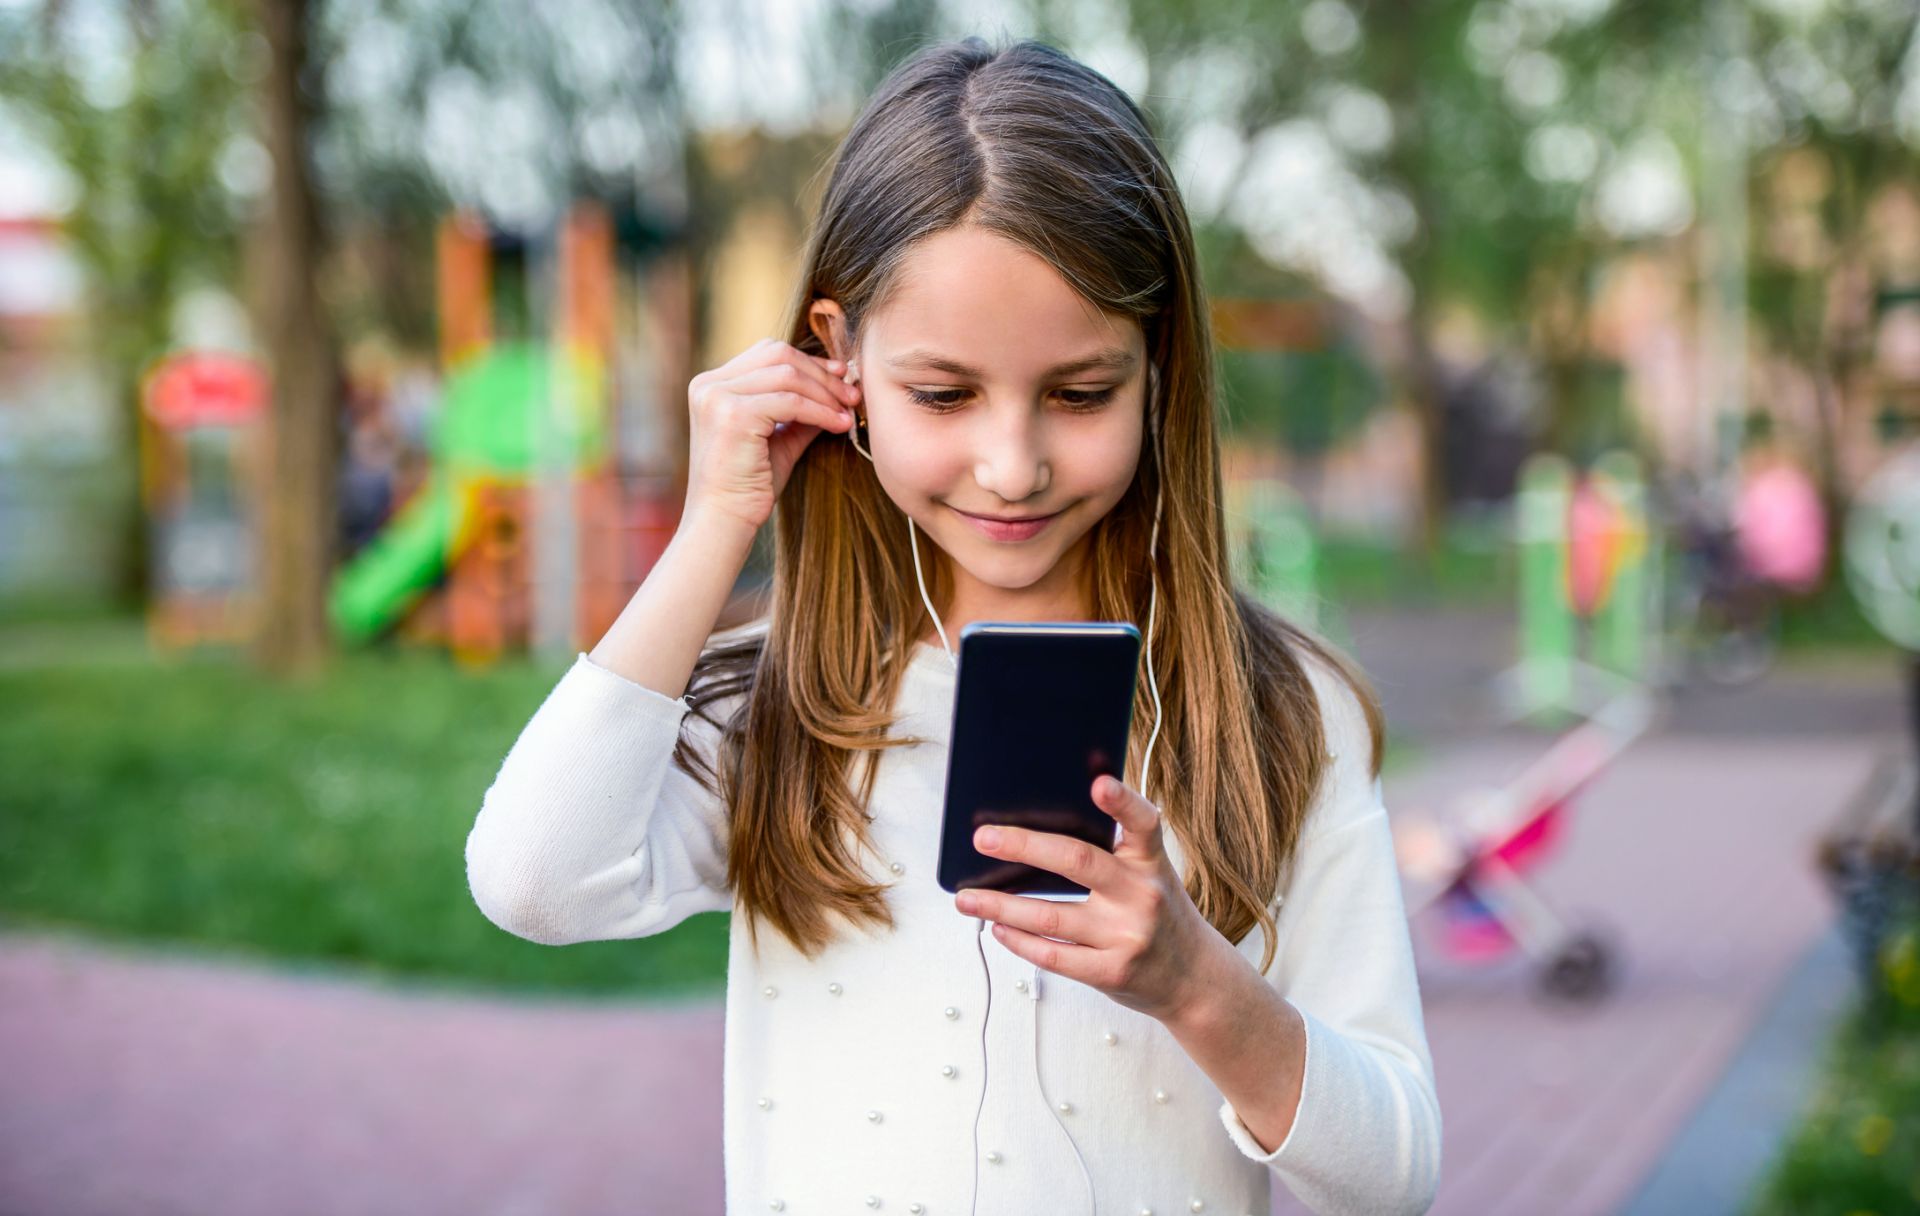 Смартфонът може да помогне на детето ви да развие интерес към музика или филми, затова не бива да му забранявате да го ползва